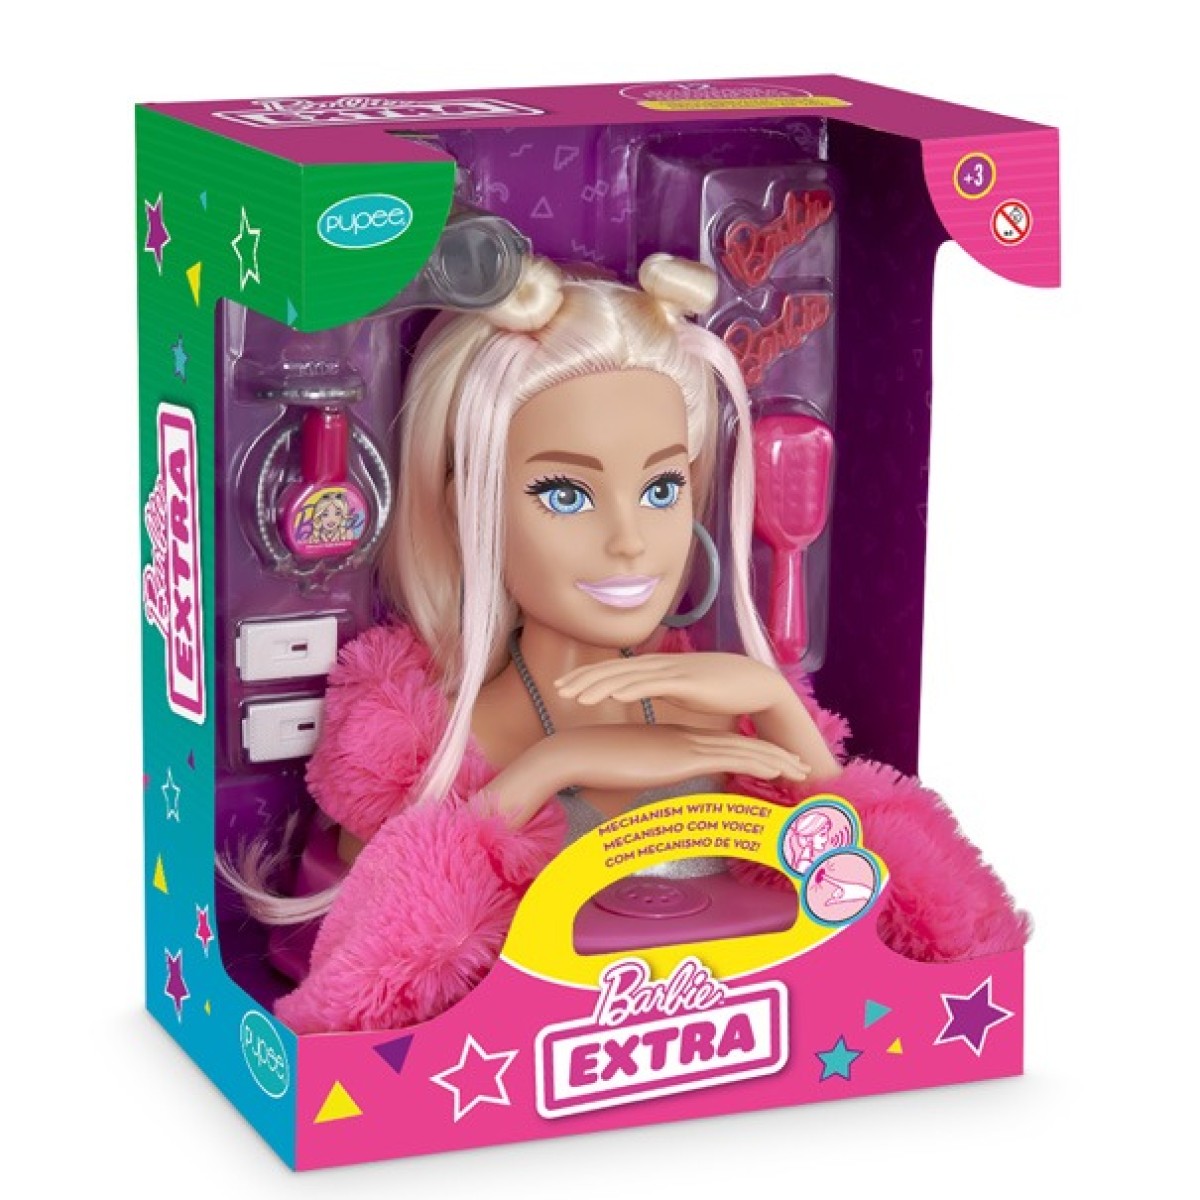 Barbie edição extra fala 12 frases e tem acessórios de beleza-1290-32355